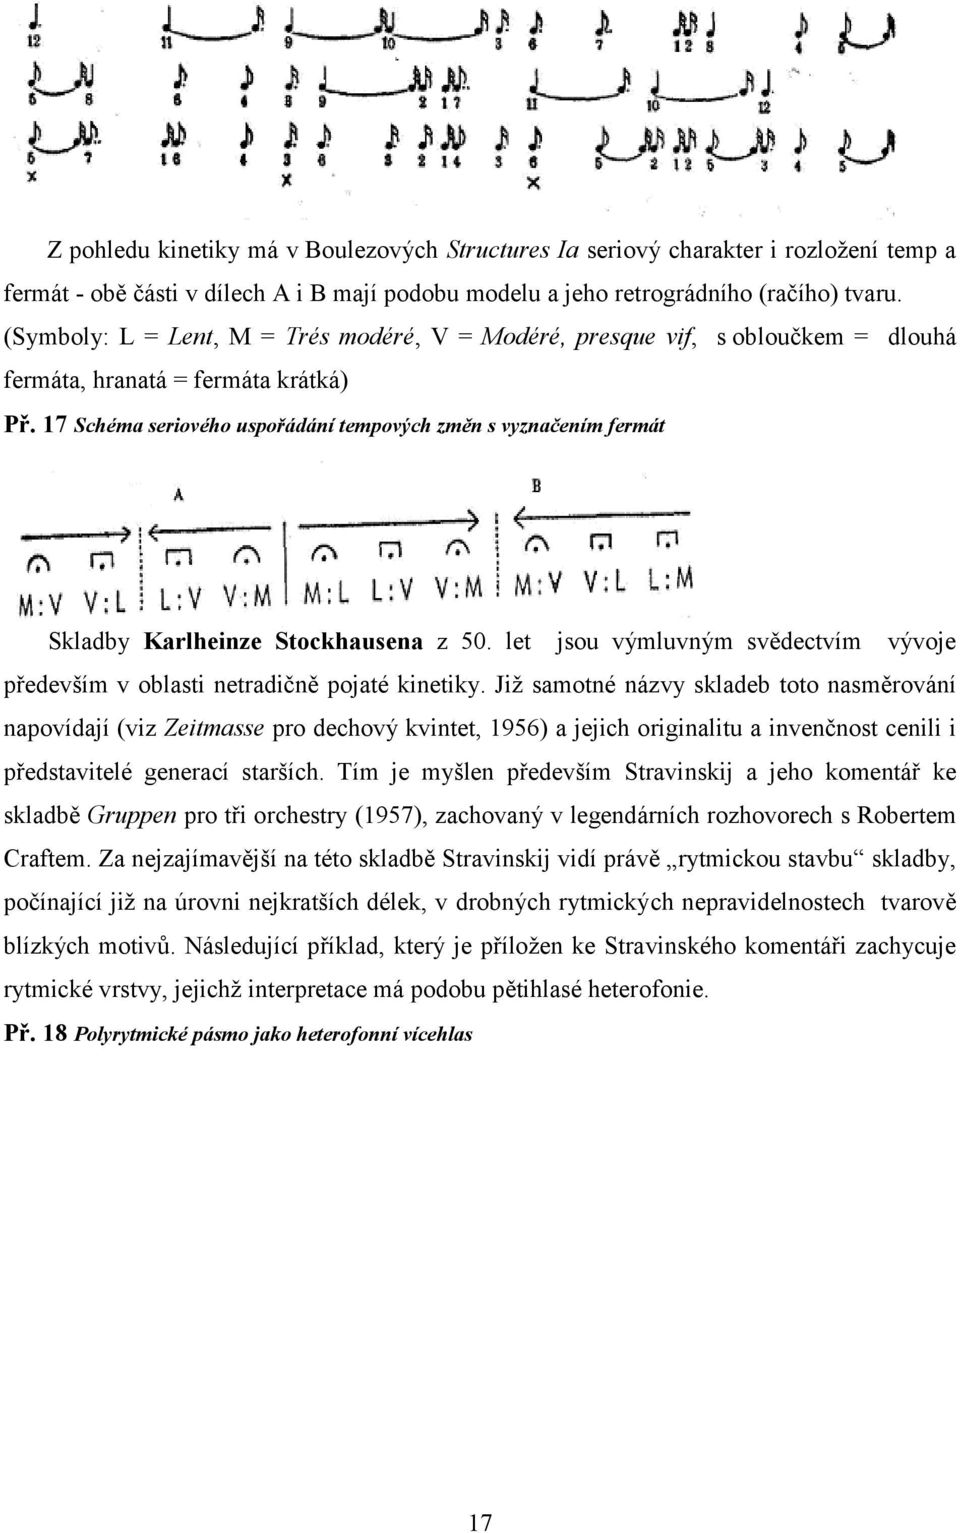 17 Schéma seriového uspořádání tempových změn s vyznačením fermát Skladby Karlheinze Stockhausena z 50. let jsou výmluvným svědectvím vývoje především v oblasti netradičně pojaté kinetiky.